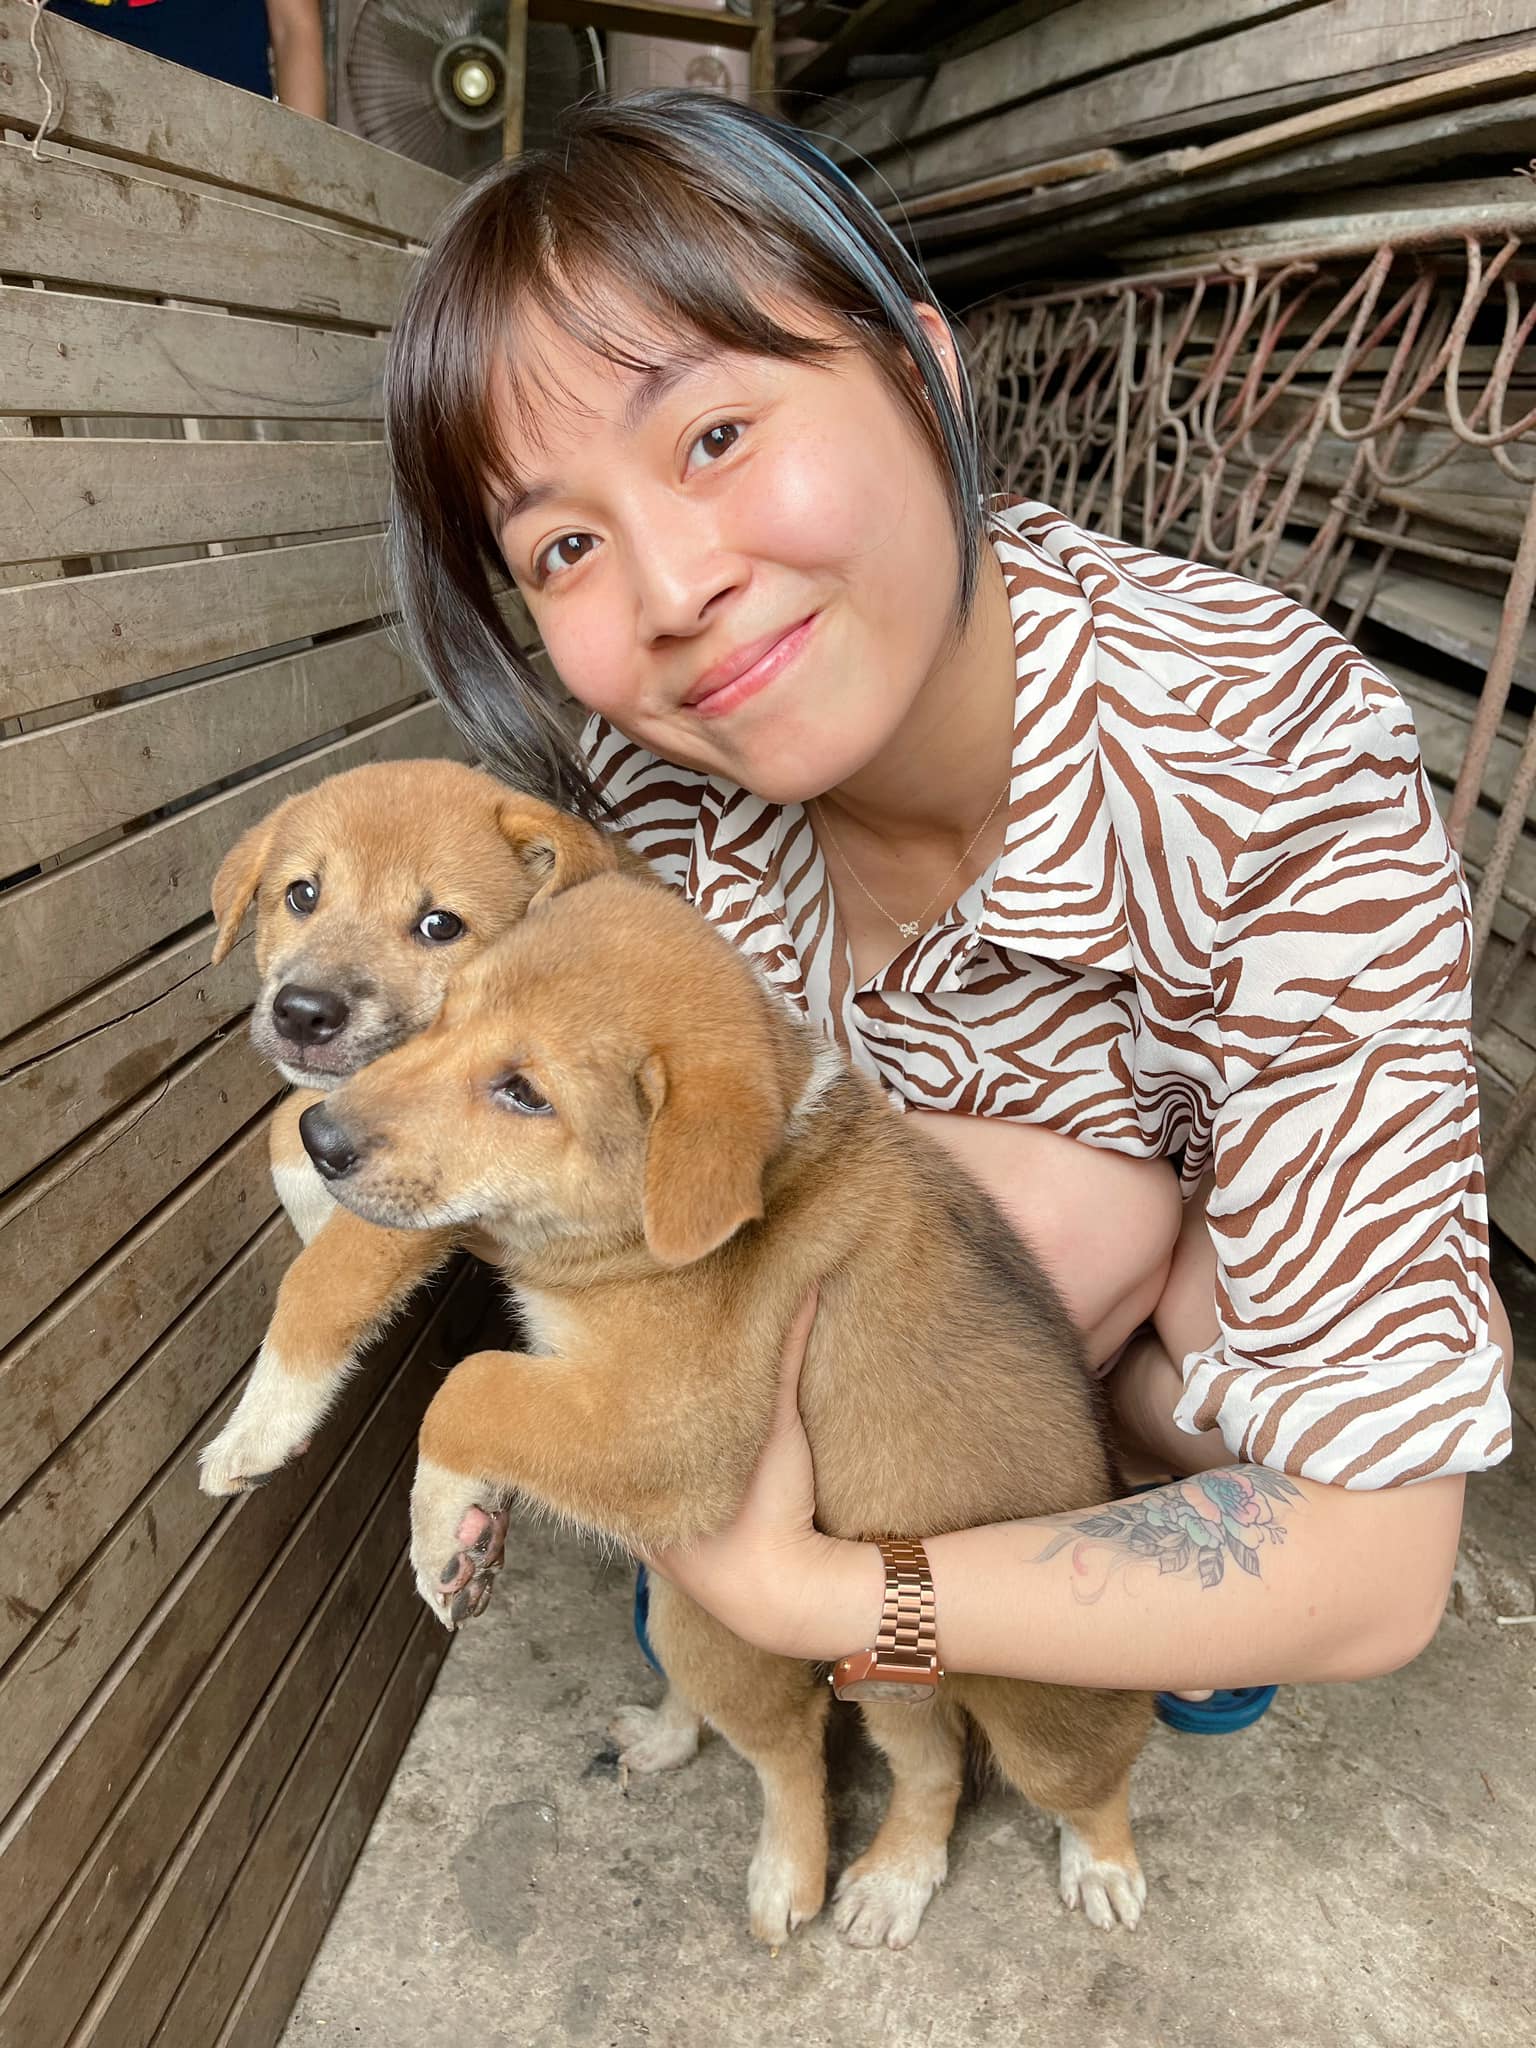 MC Hoàng Linh cho hay, chó nhà bà ngoại cô mới sinh 7 chú cún con, bạn nào muốn làm chủ của những chú cún xinh xắn có thể liên hệ với cô để nhận nuôi.